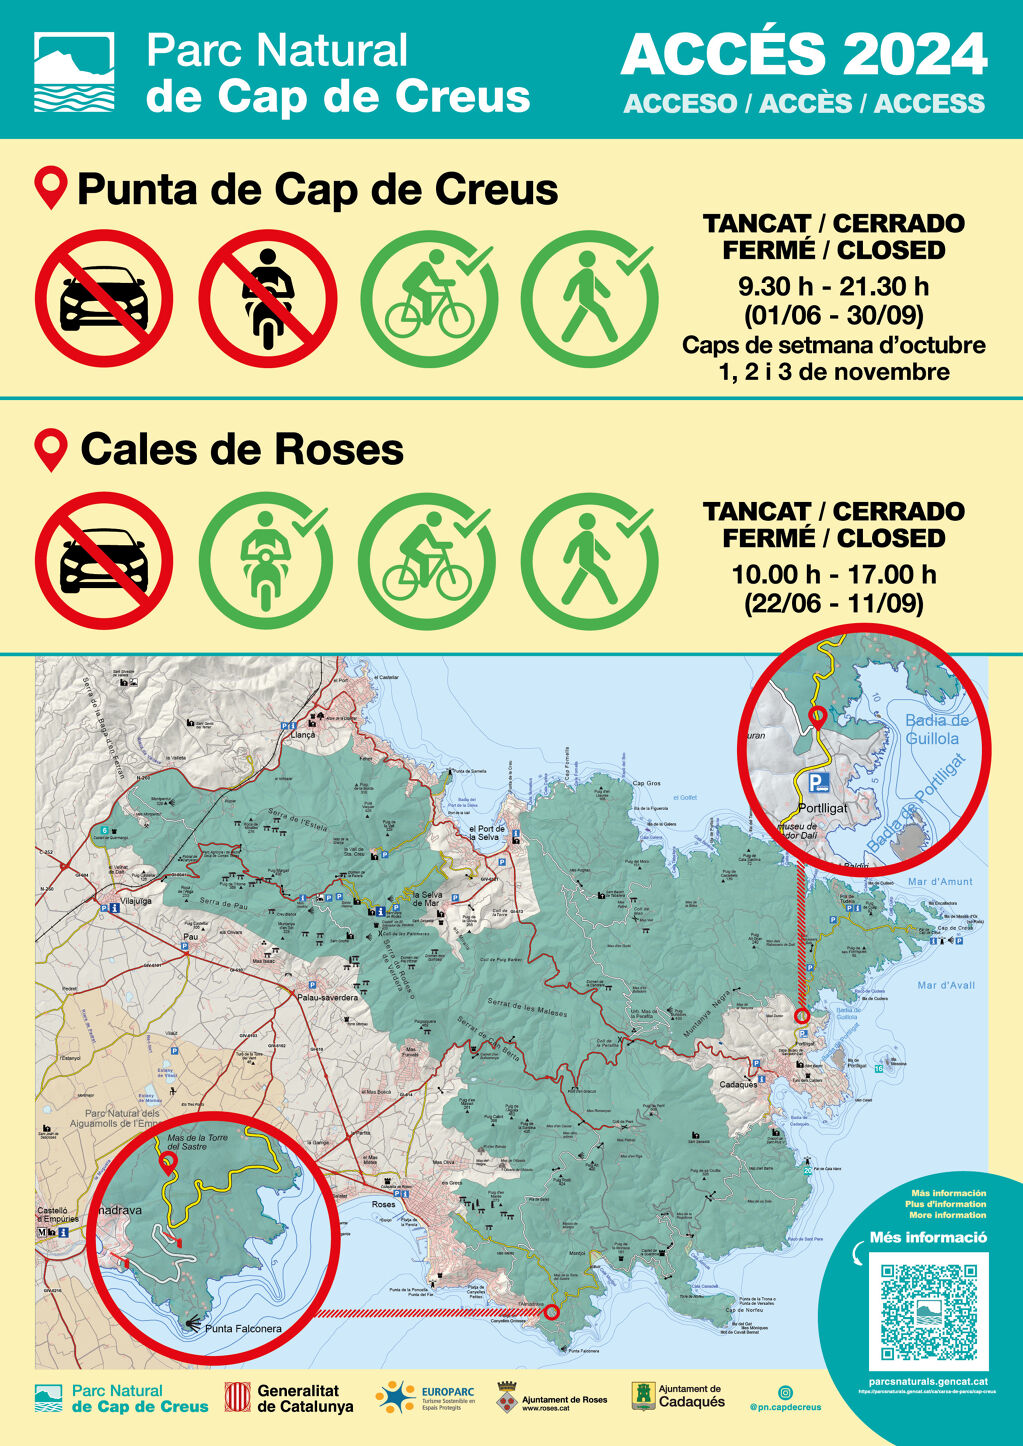 L’accés de vehicles al PN de Cap de Creus des de Roses, tancat del 22 de juny a l’11 de setembre